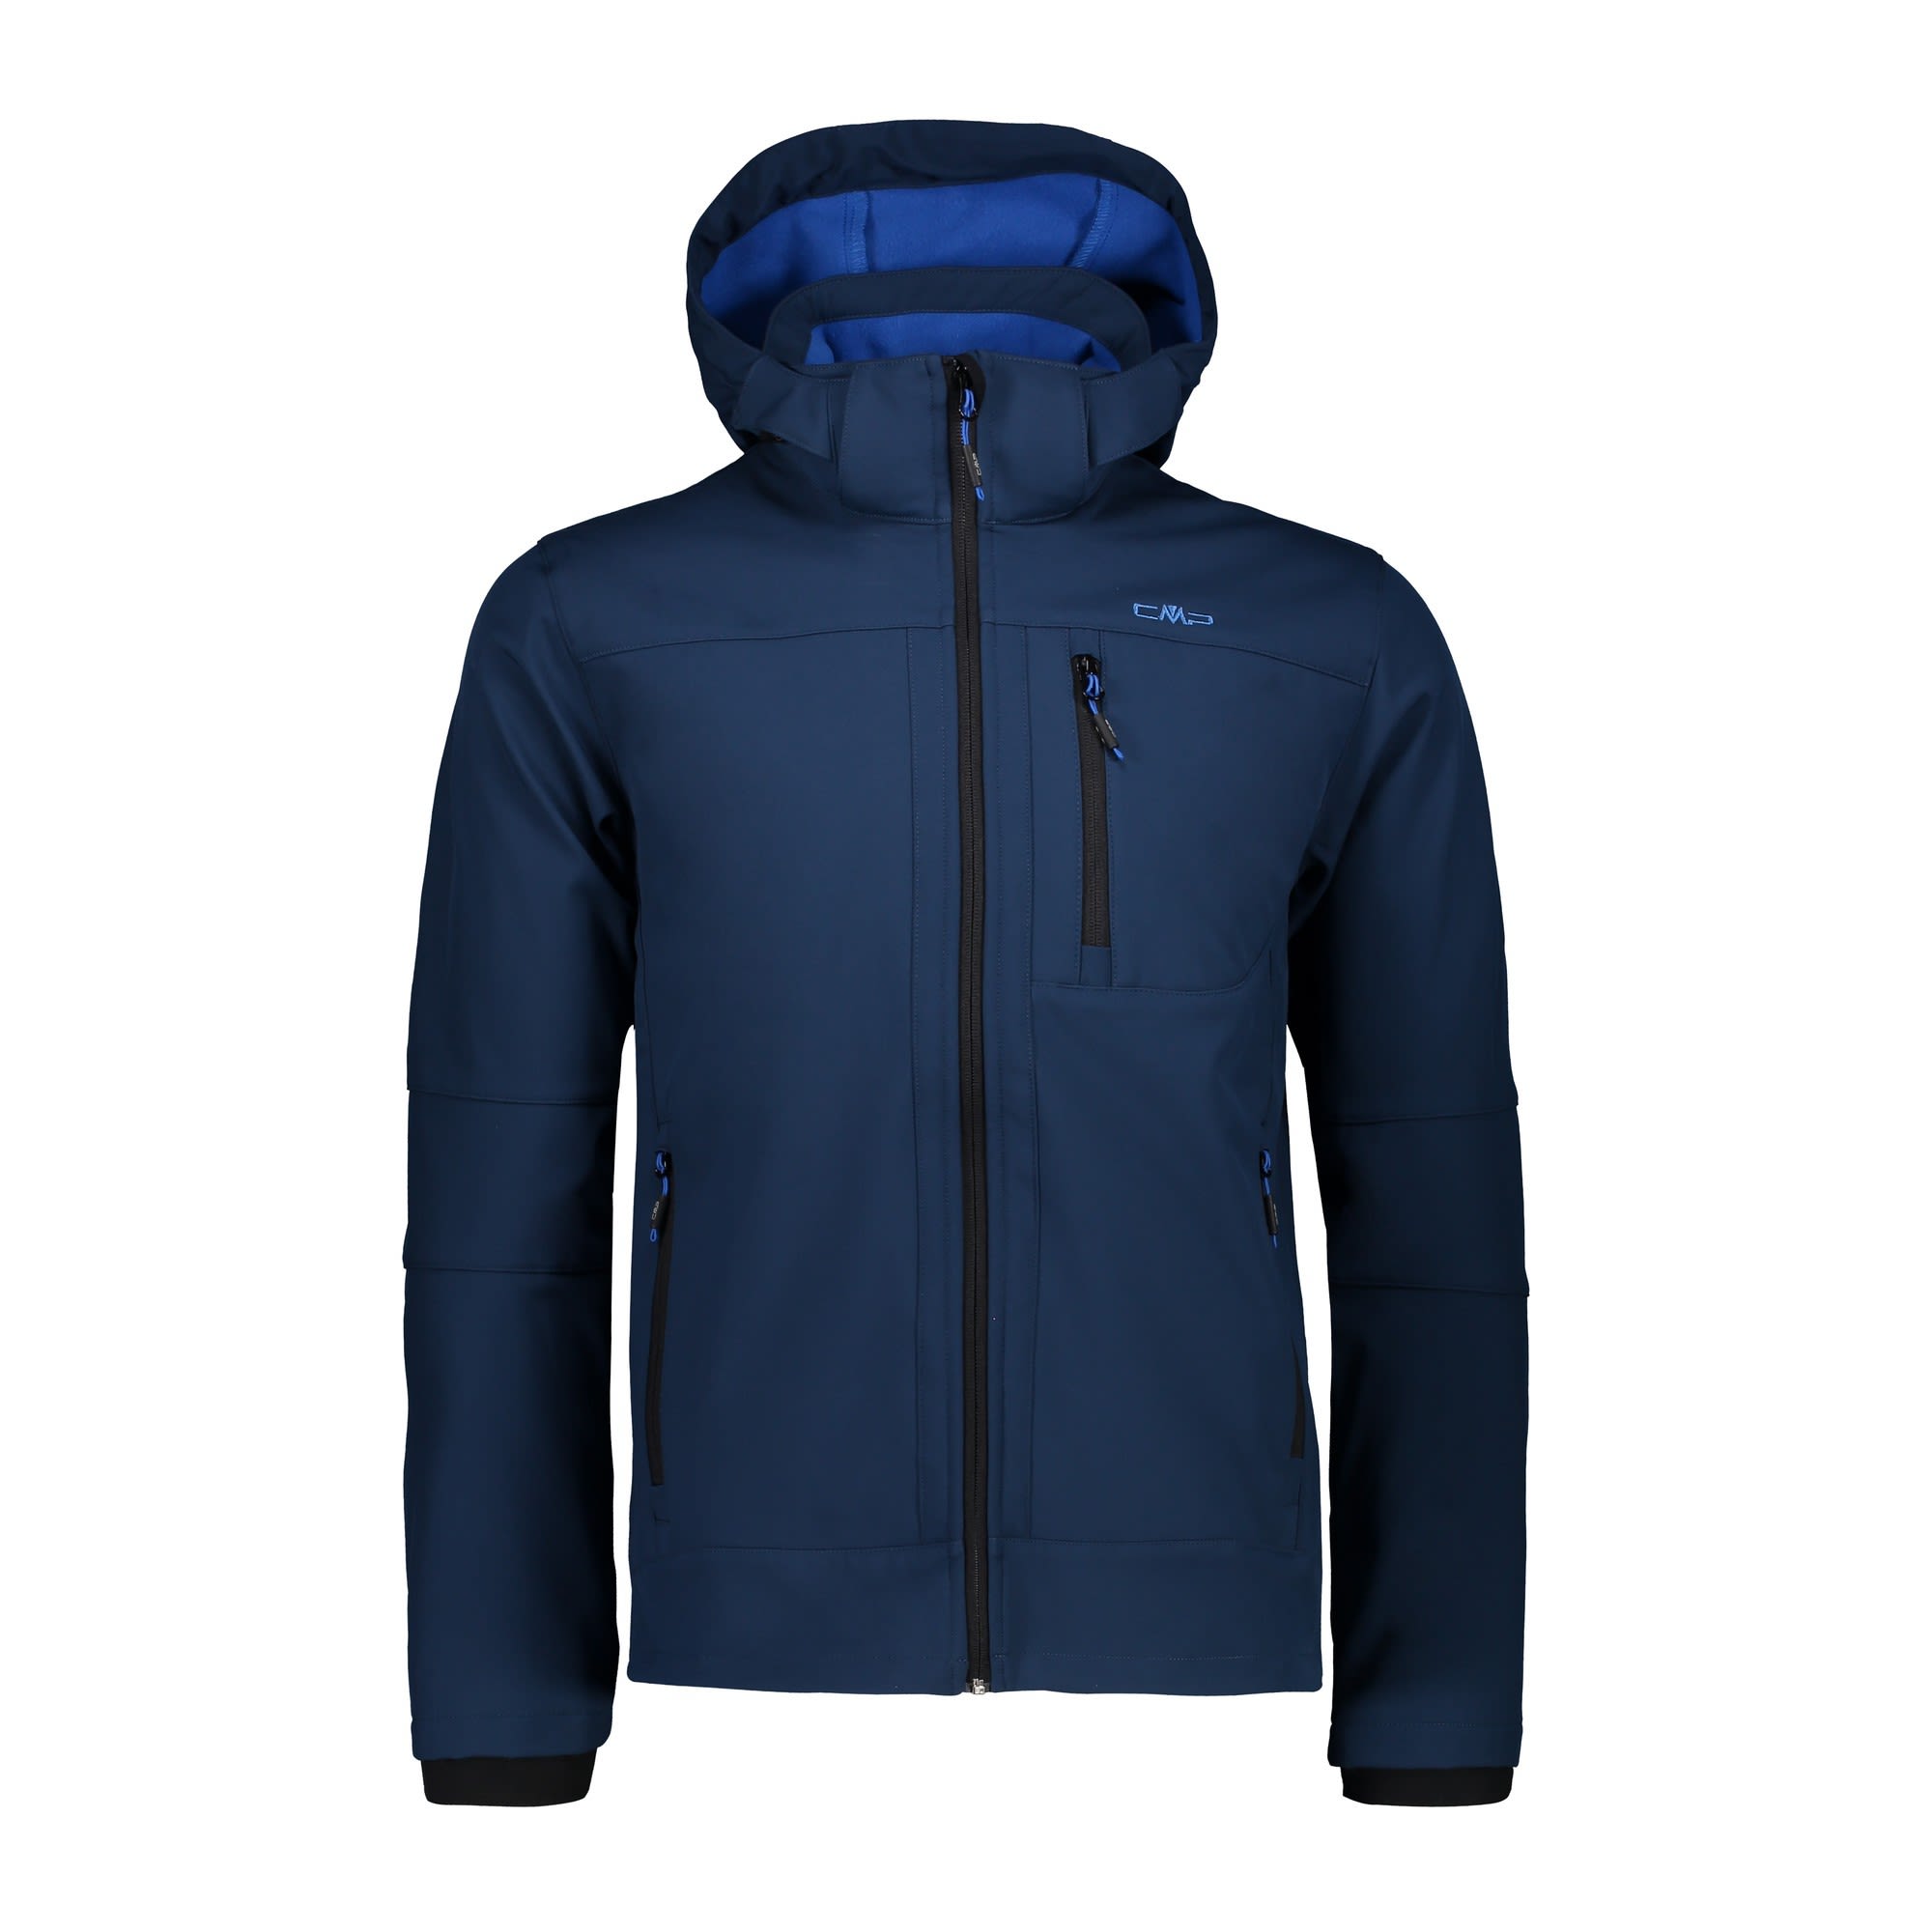 CMP Jacket Zip Hood Clean Blau- Male Softshelljacken- Grsse 58 - Farbe Marine